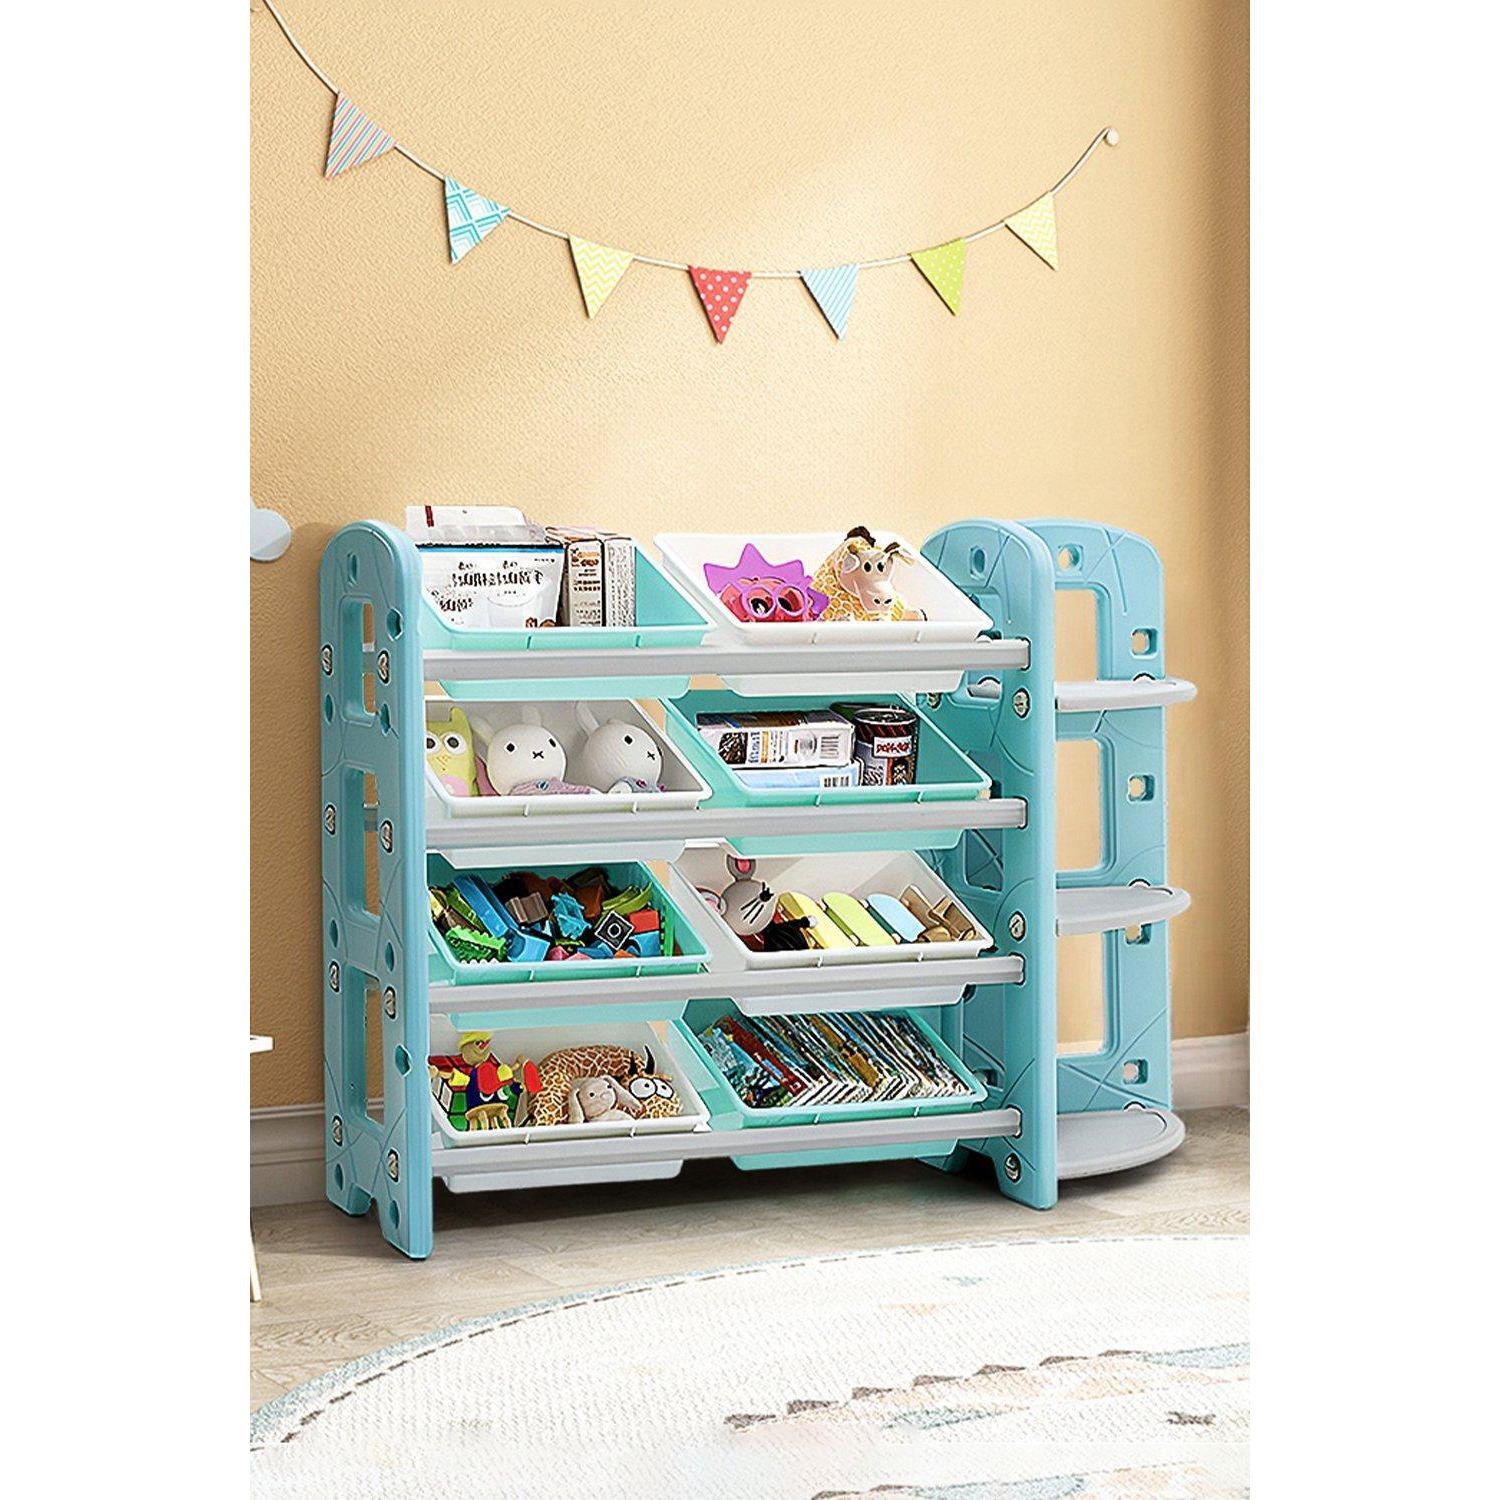 8 Toy Storage Bins Organizer with 3 Tier Corner Shelf - image 1